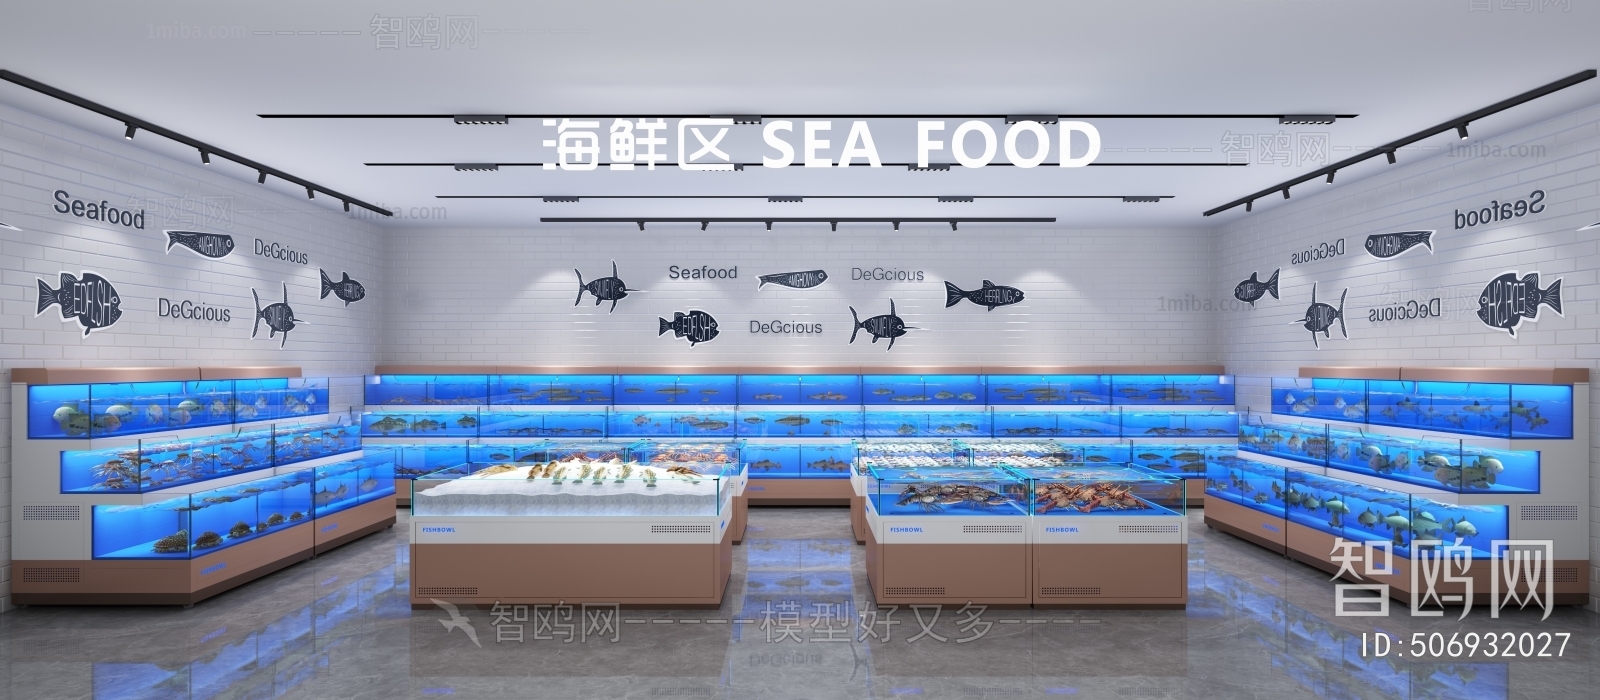 现代超市海鲜水产区